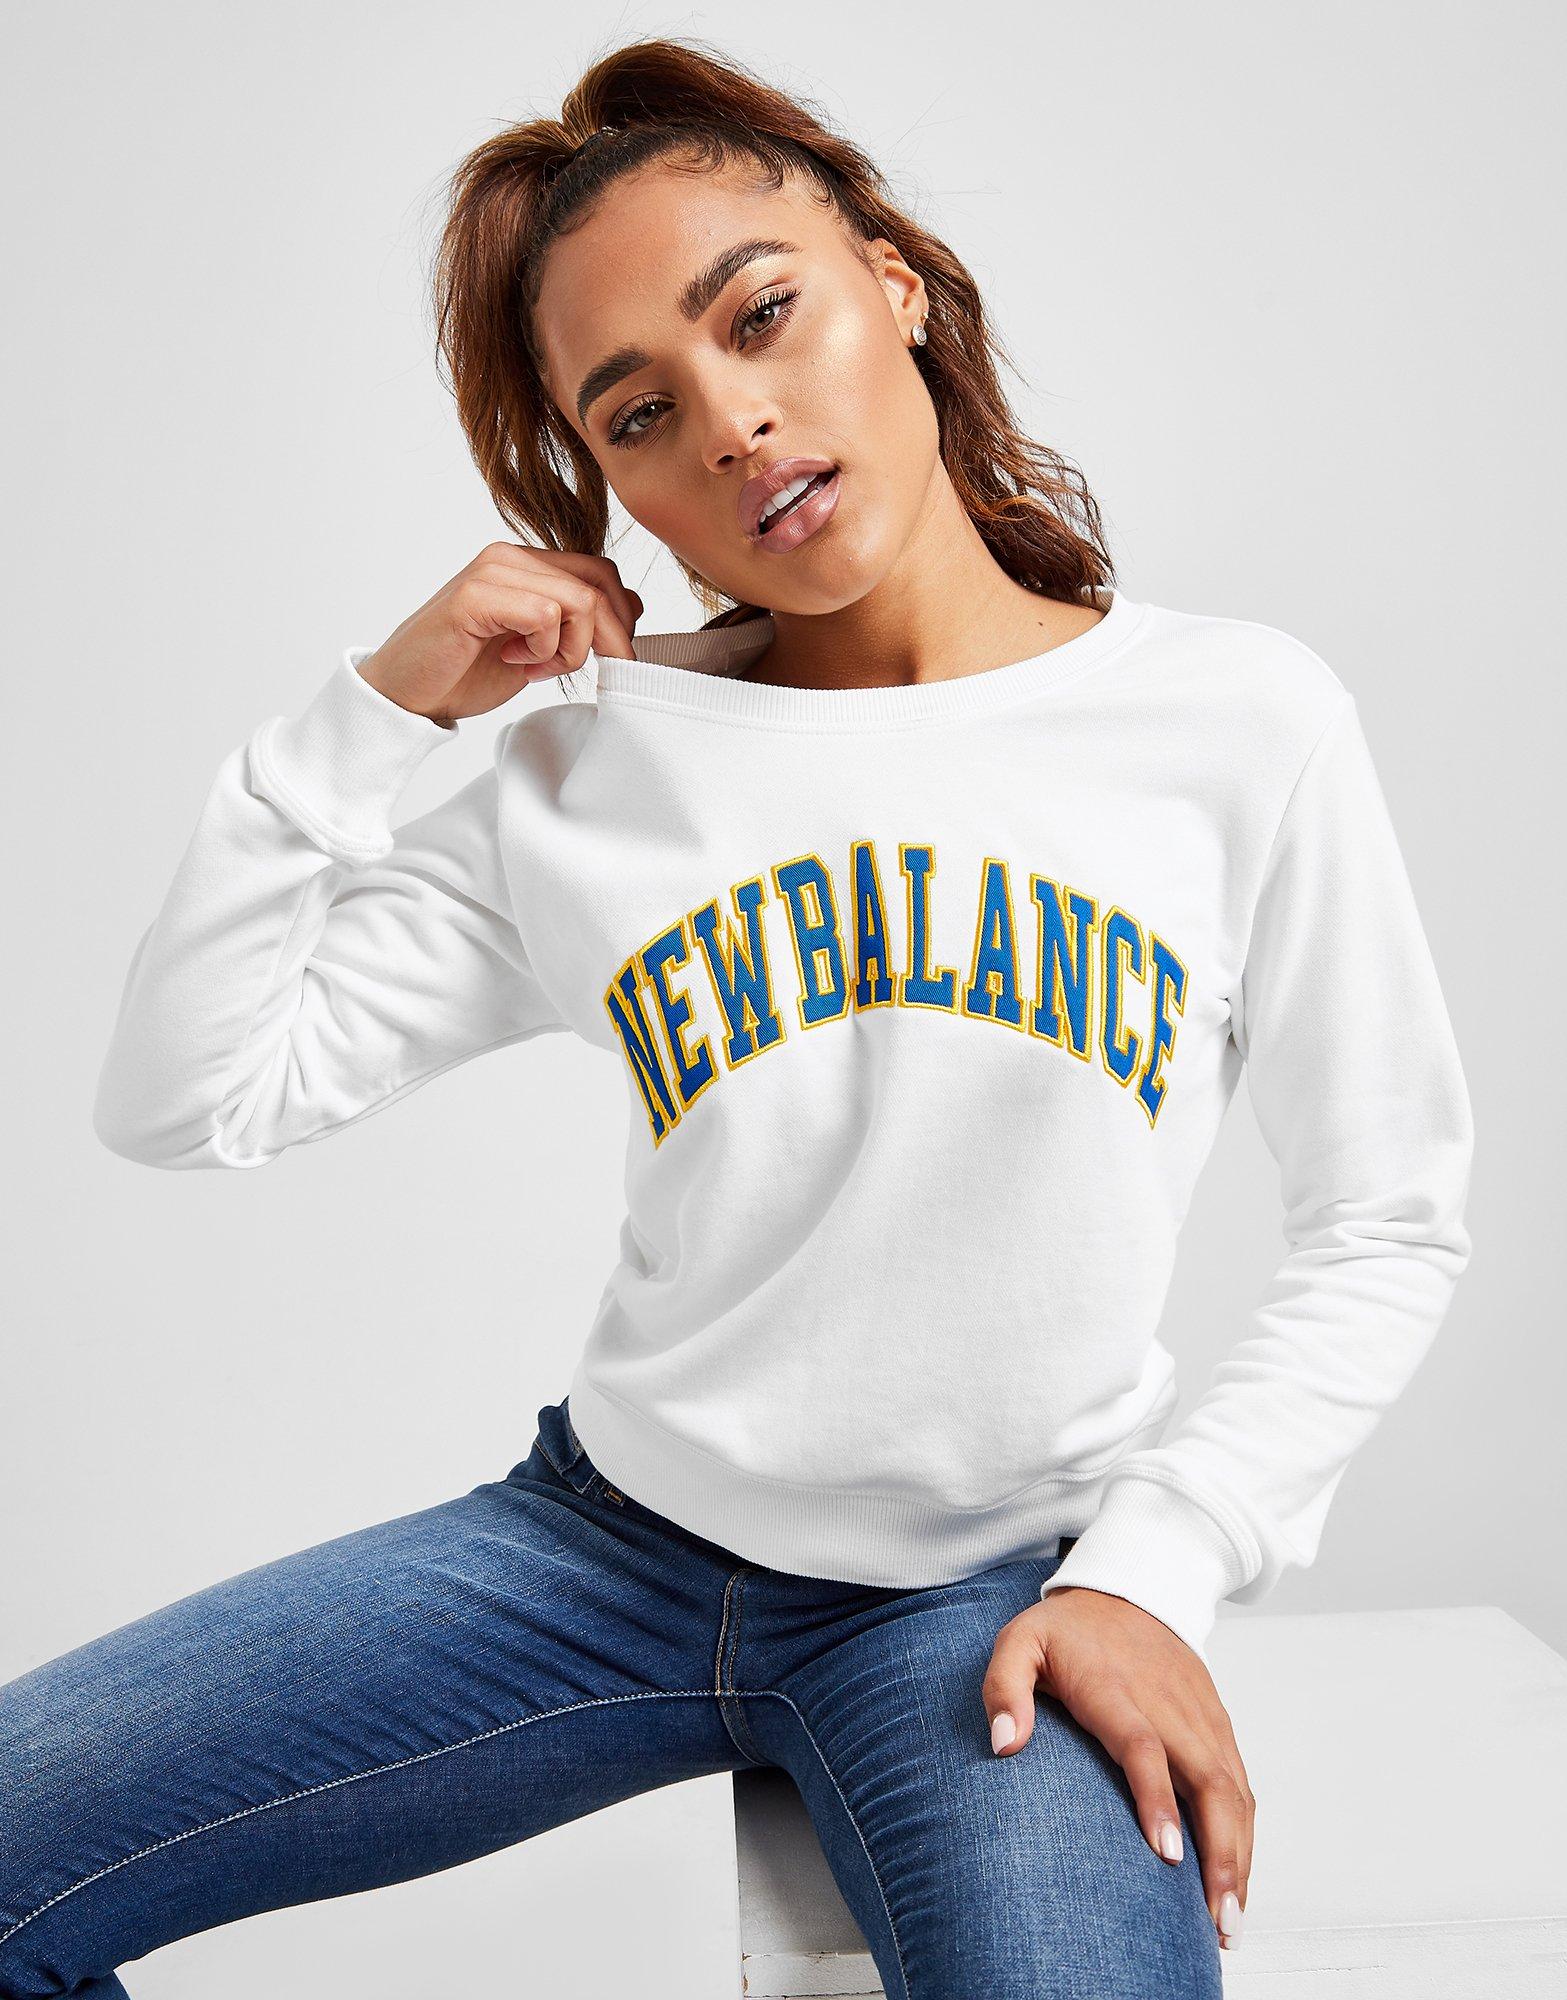 womens new balance sweatshirt